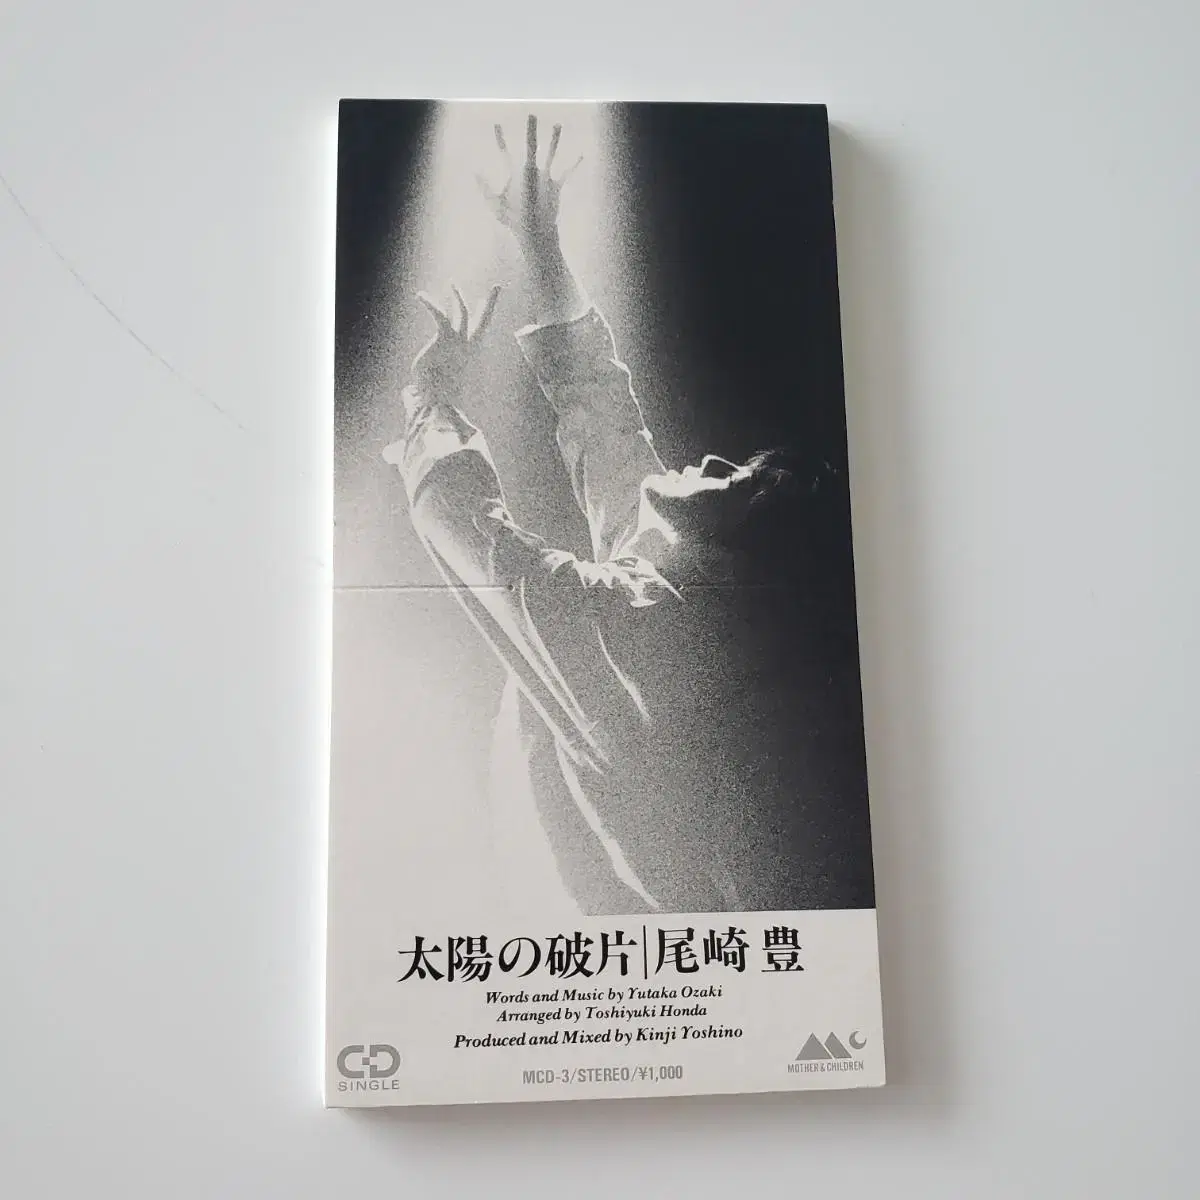 오자키유타카 - 태양의 파편 8cm싱글cd | 브랜드 중고거래 플랫폼 